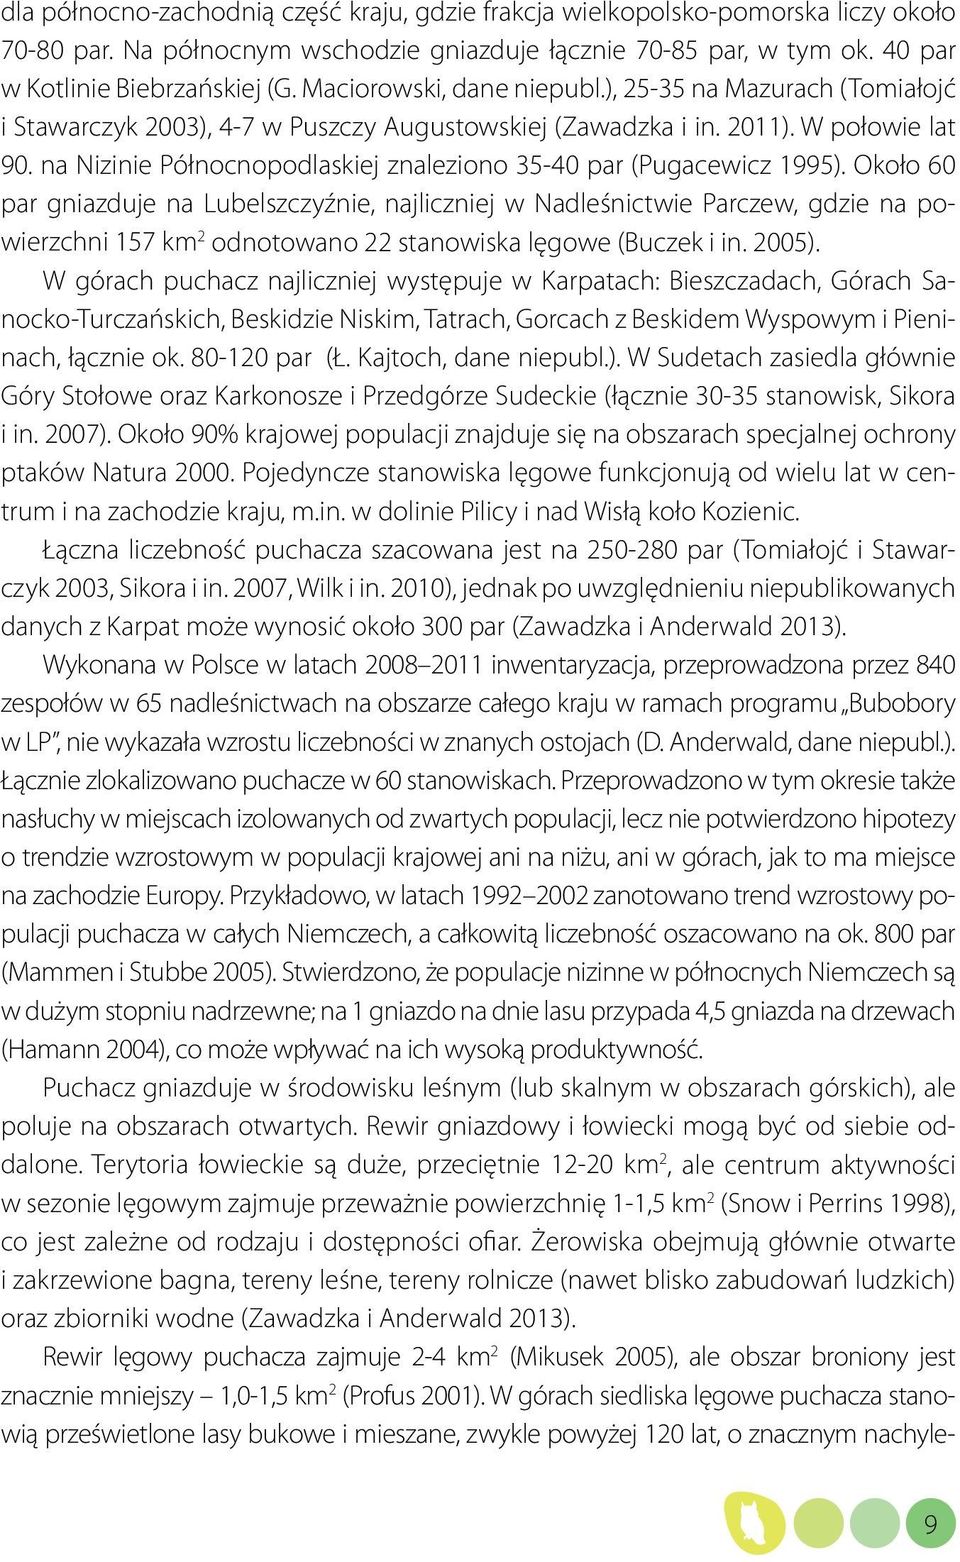 na Nizinie Północnopodlaskiej znaleziono 35-40 par (Pugacewicz 1995).